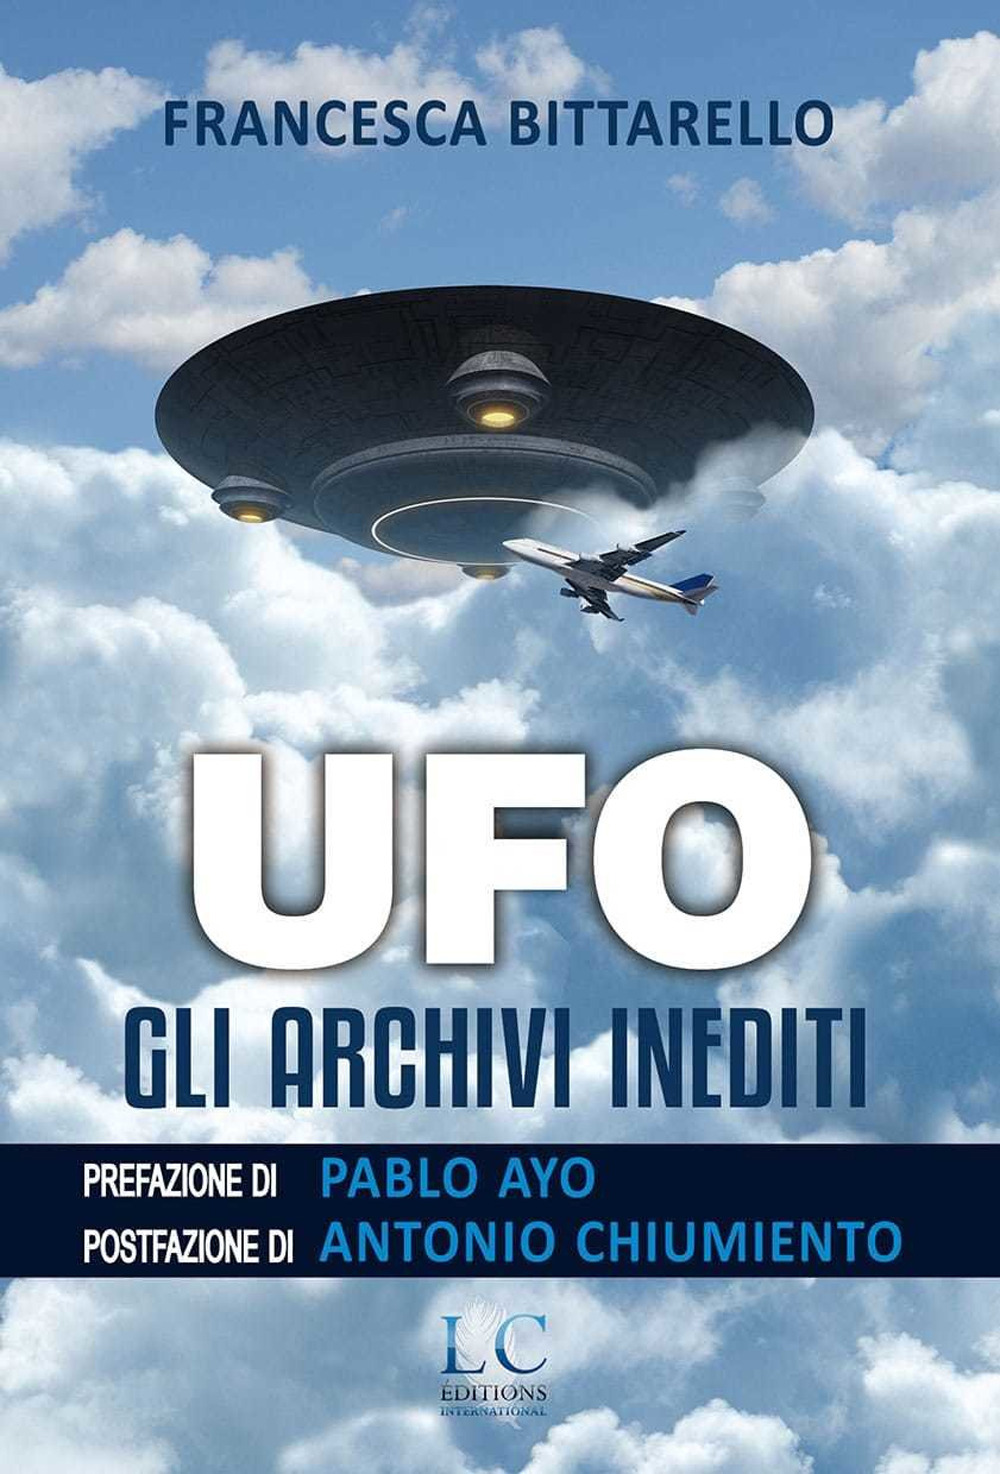 Ufo. Gli archivi inediti